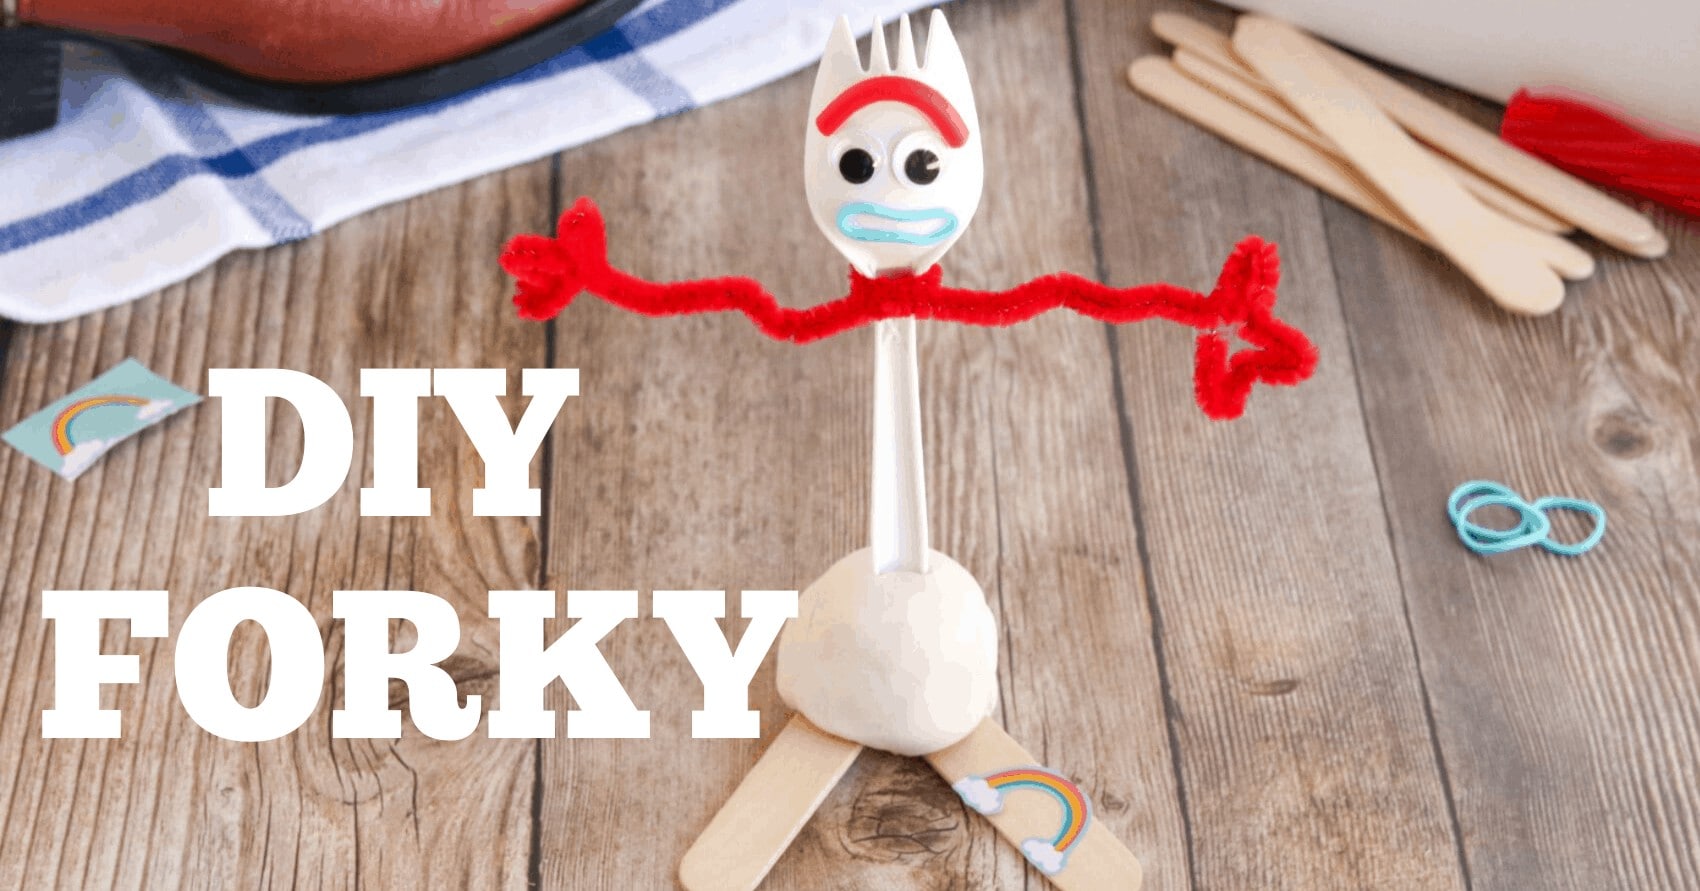 DIY Toy Story 4 Forky  Toy story crafts, Toy story party